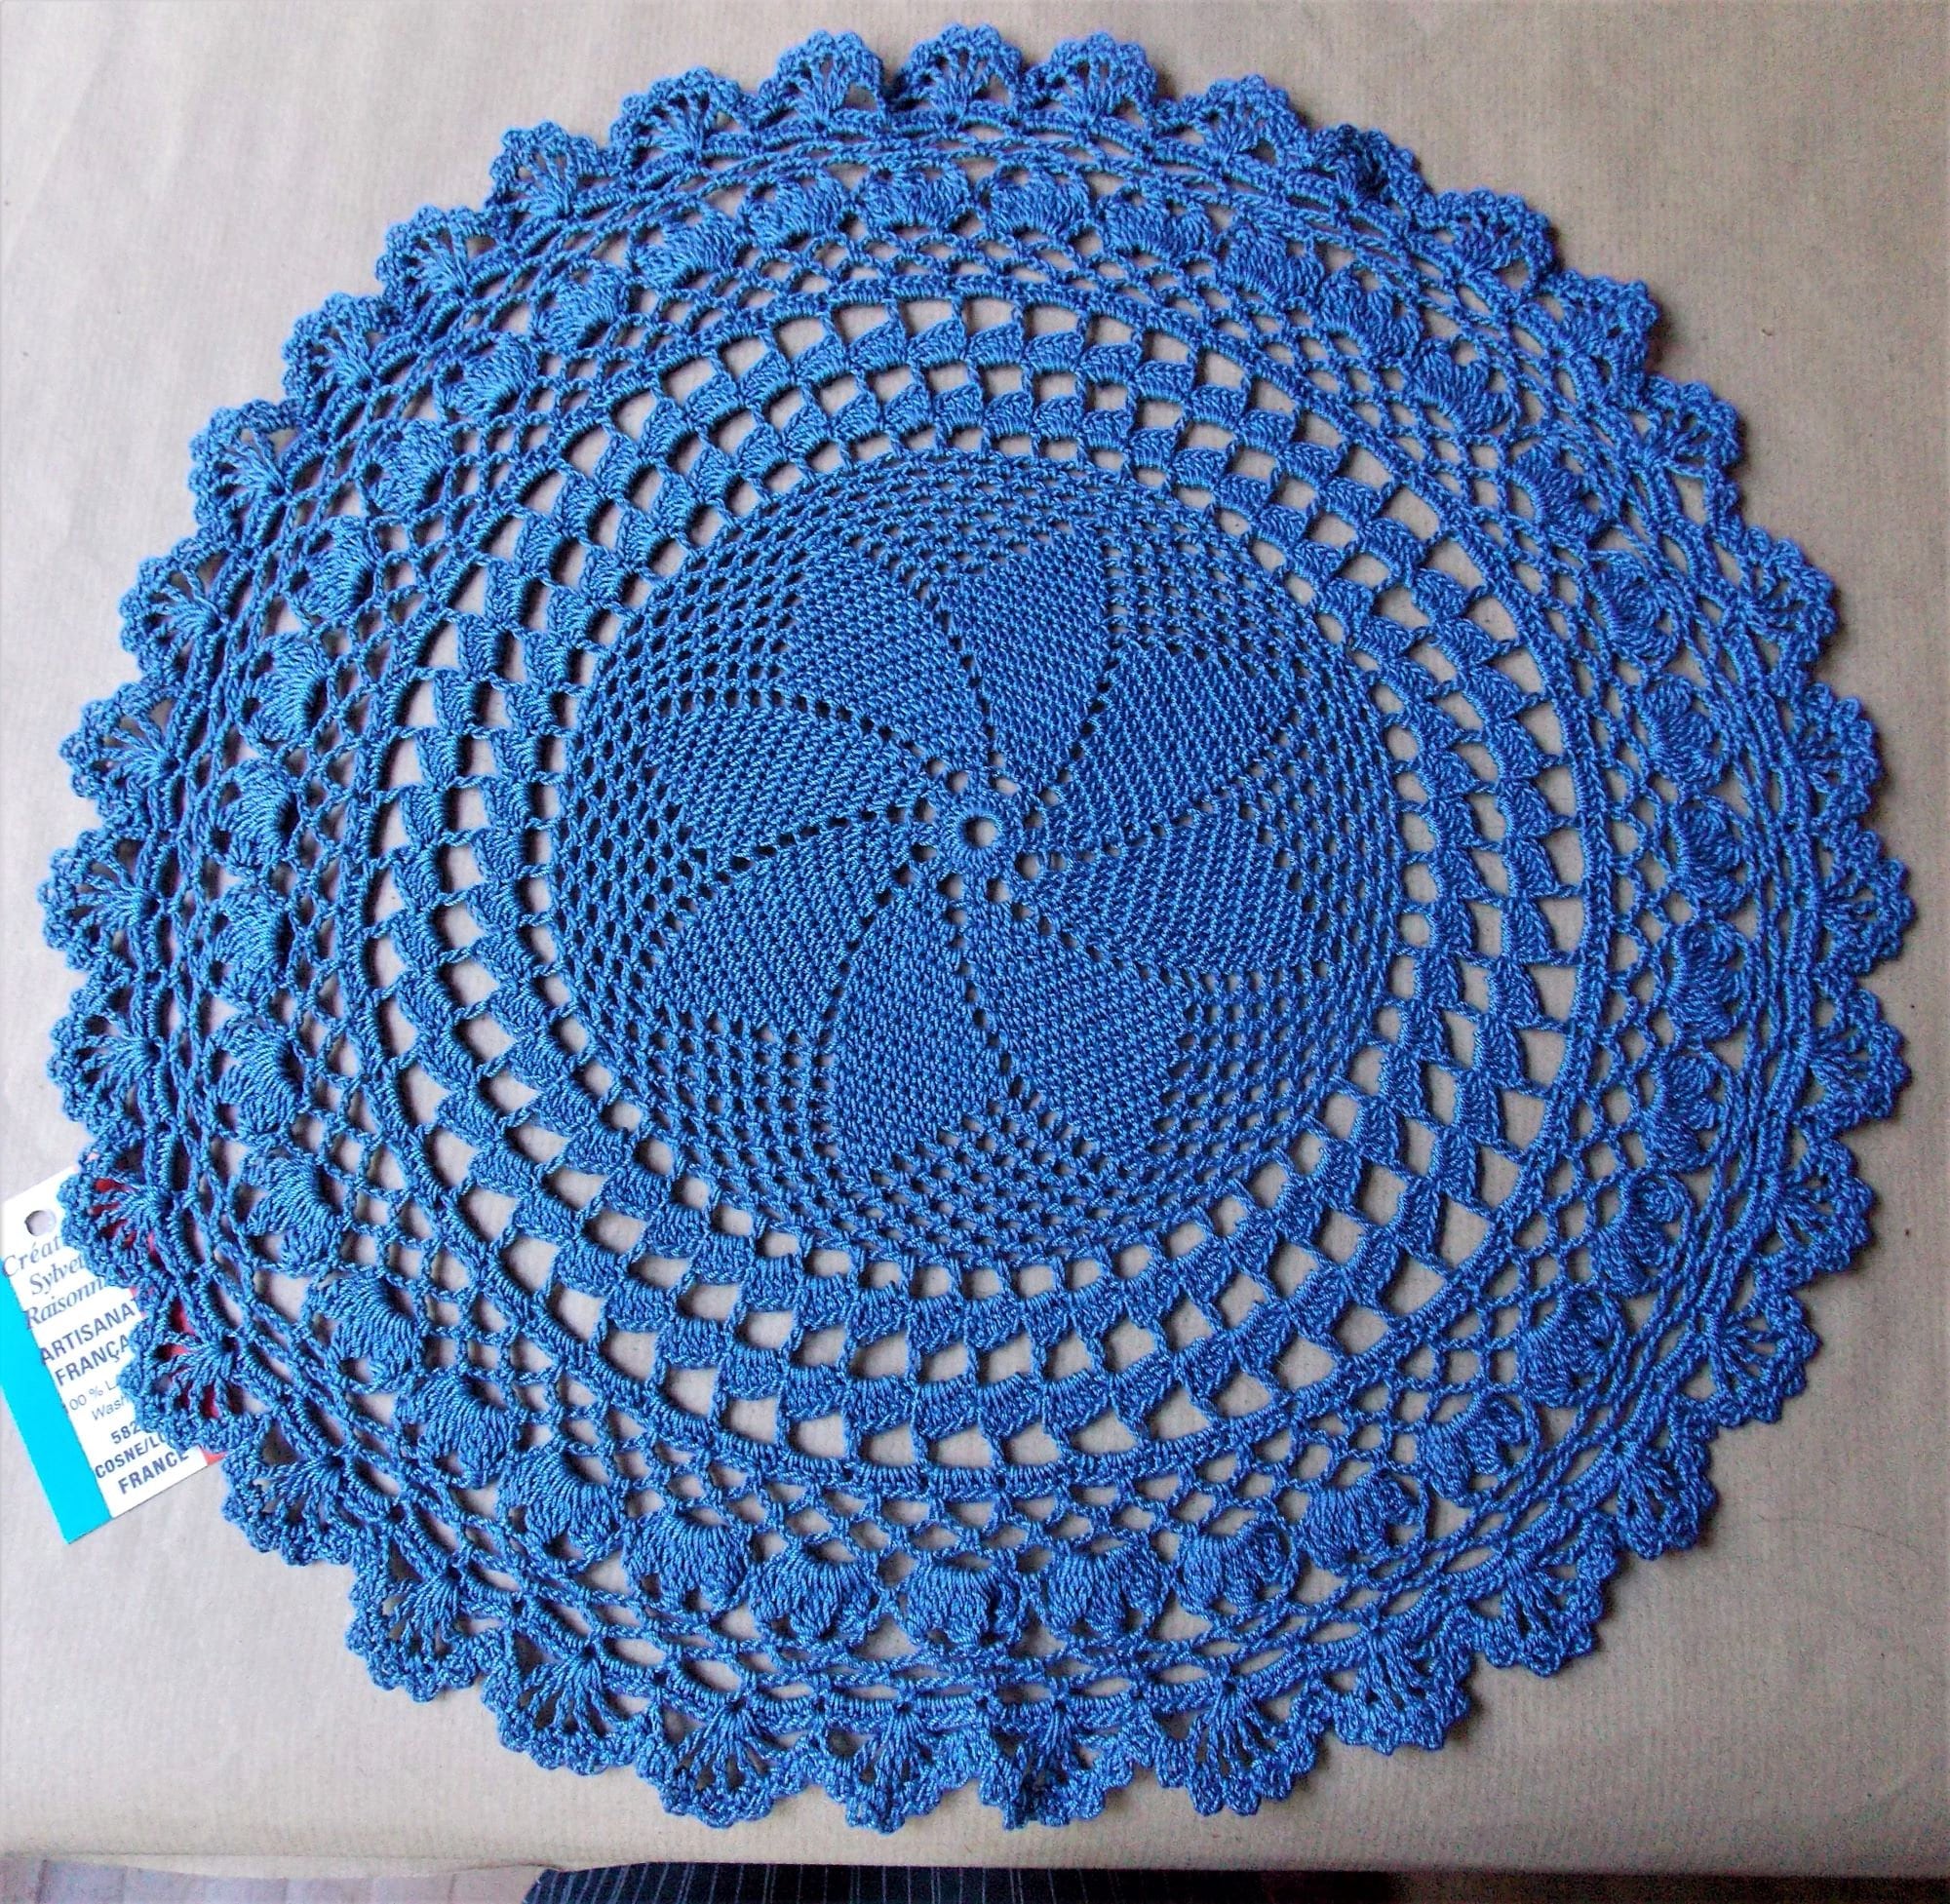 Napperon Crochet Main Artisanat Français Création Sylvette Raisonnier Rond de 44cm Bleu Ancien Neptu